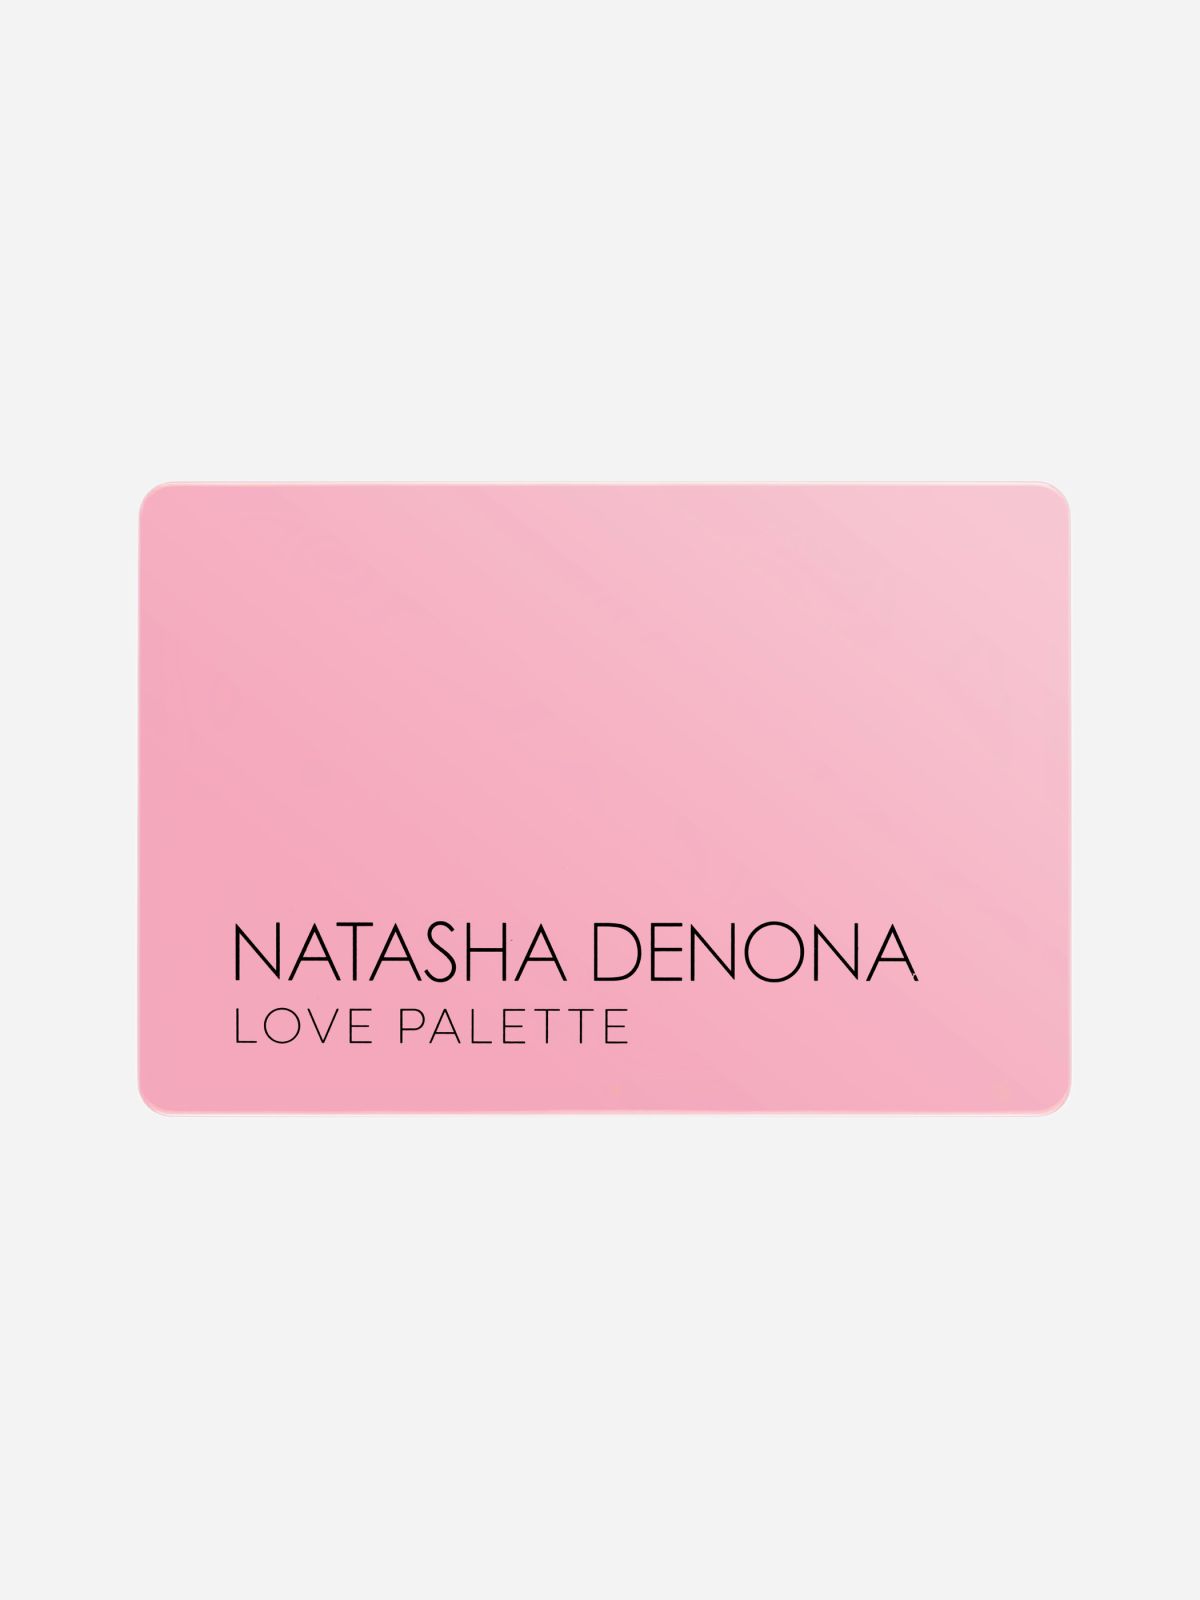  פלטת צלליות לעיניים בעלת 15 גווני וורוד וסגול Love palette של NATASHA DENONA